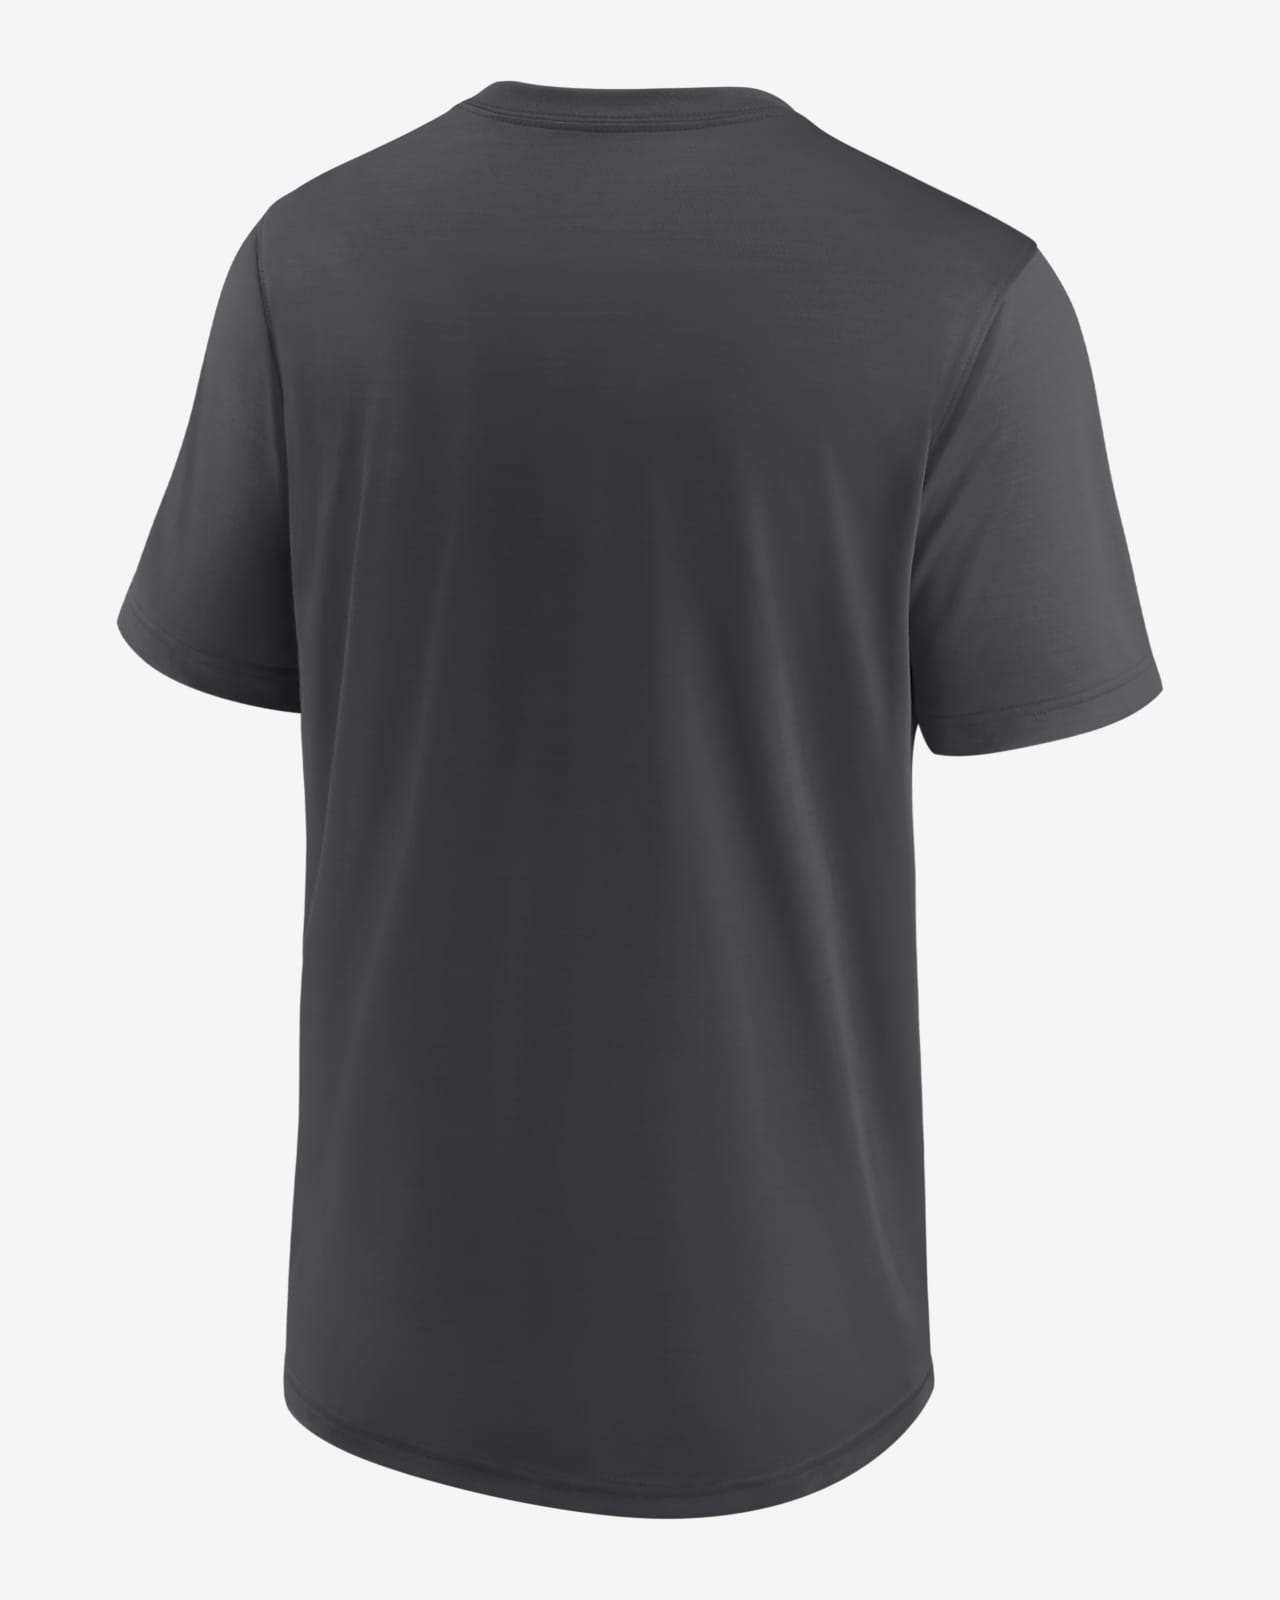 Nike Swoosh Logo x San Diego Padres MLB Team Unique T-Shirt